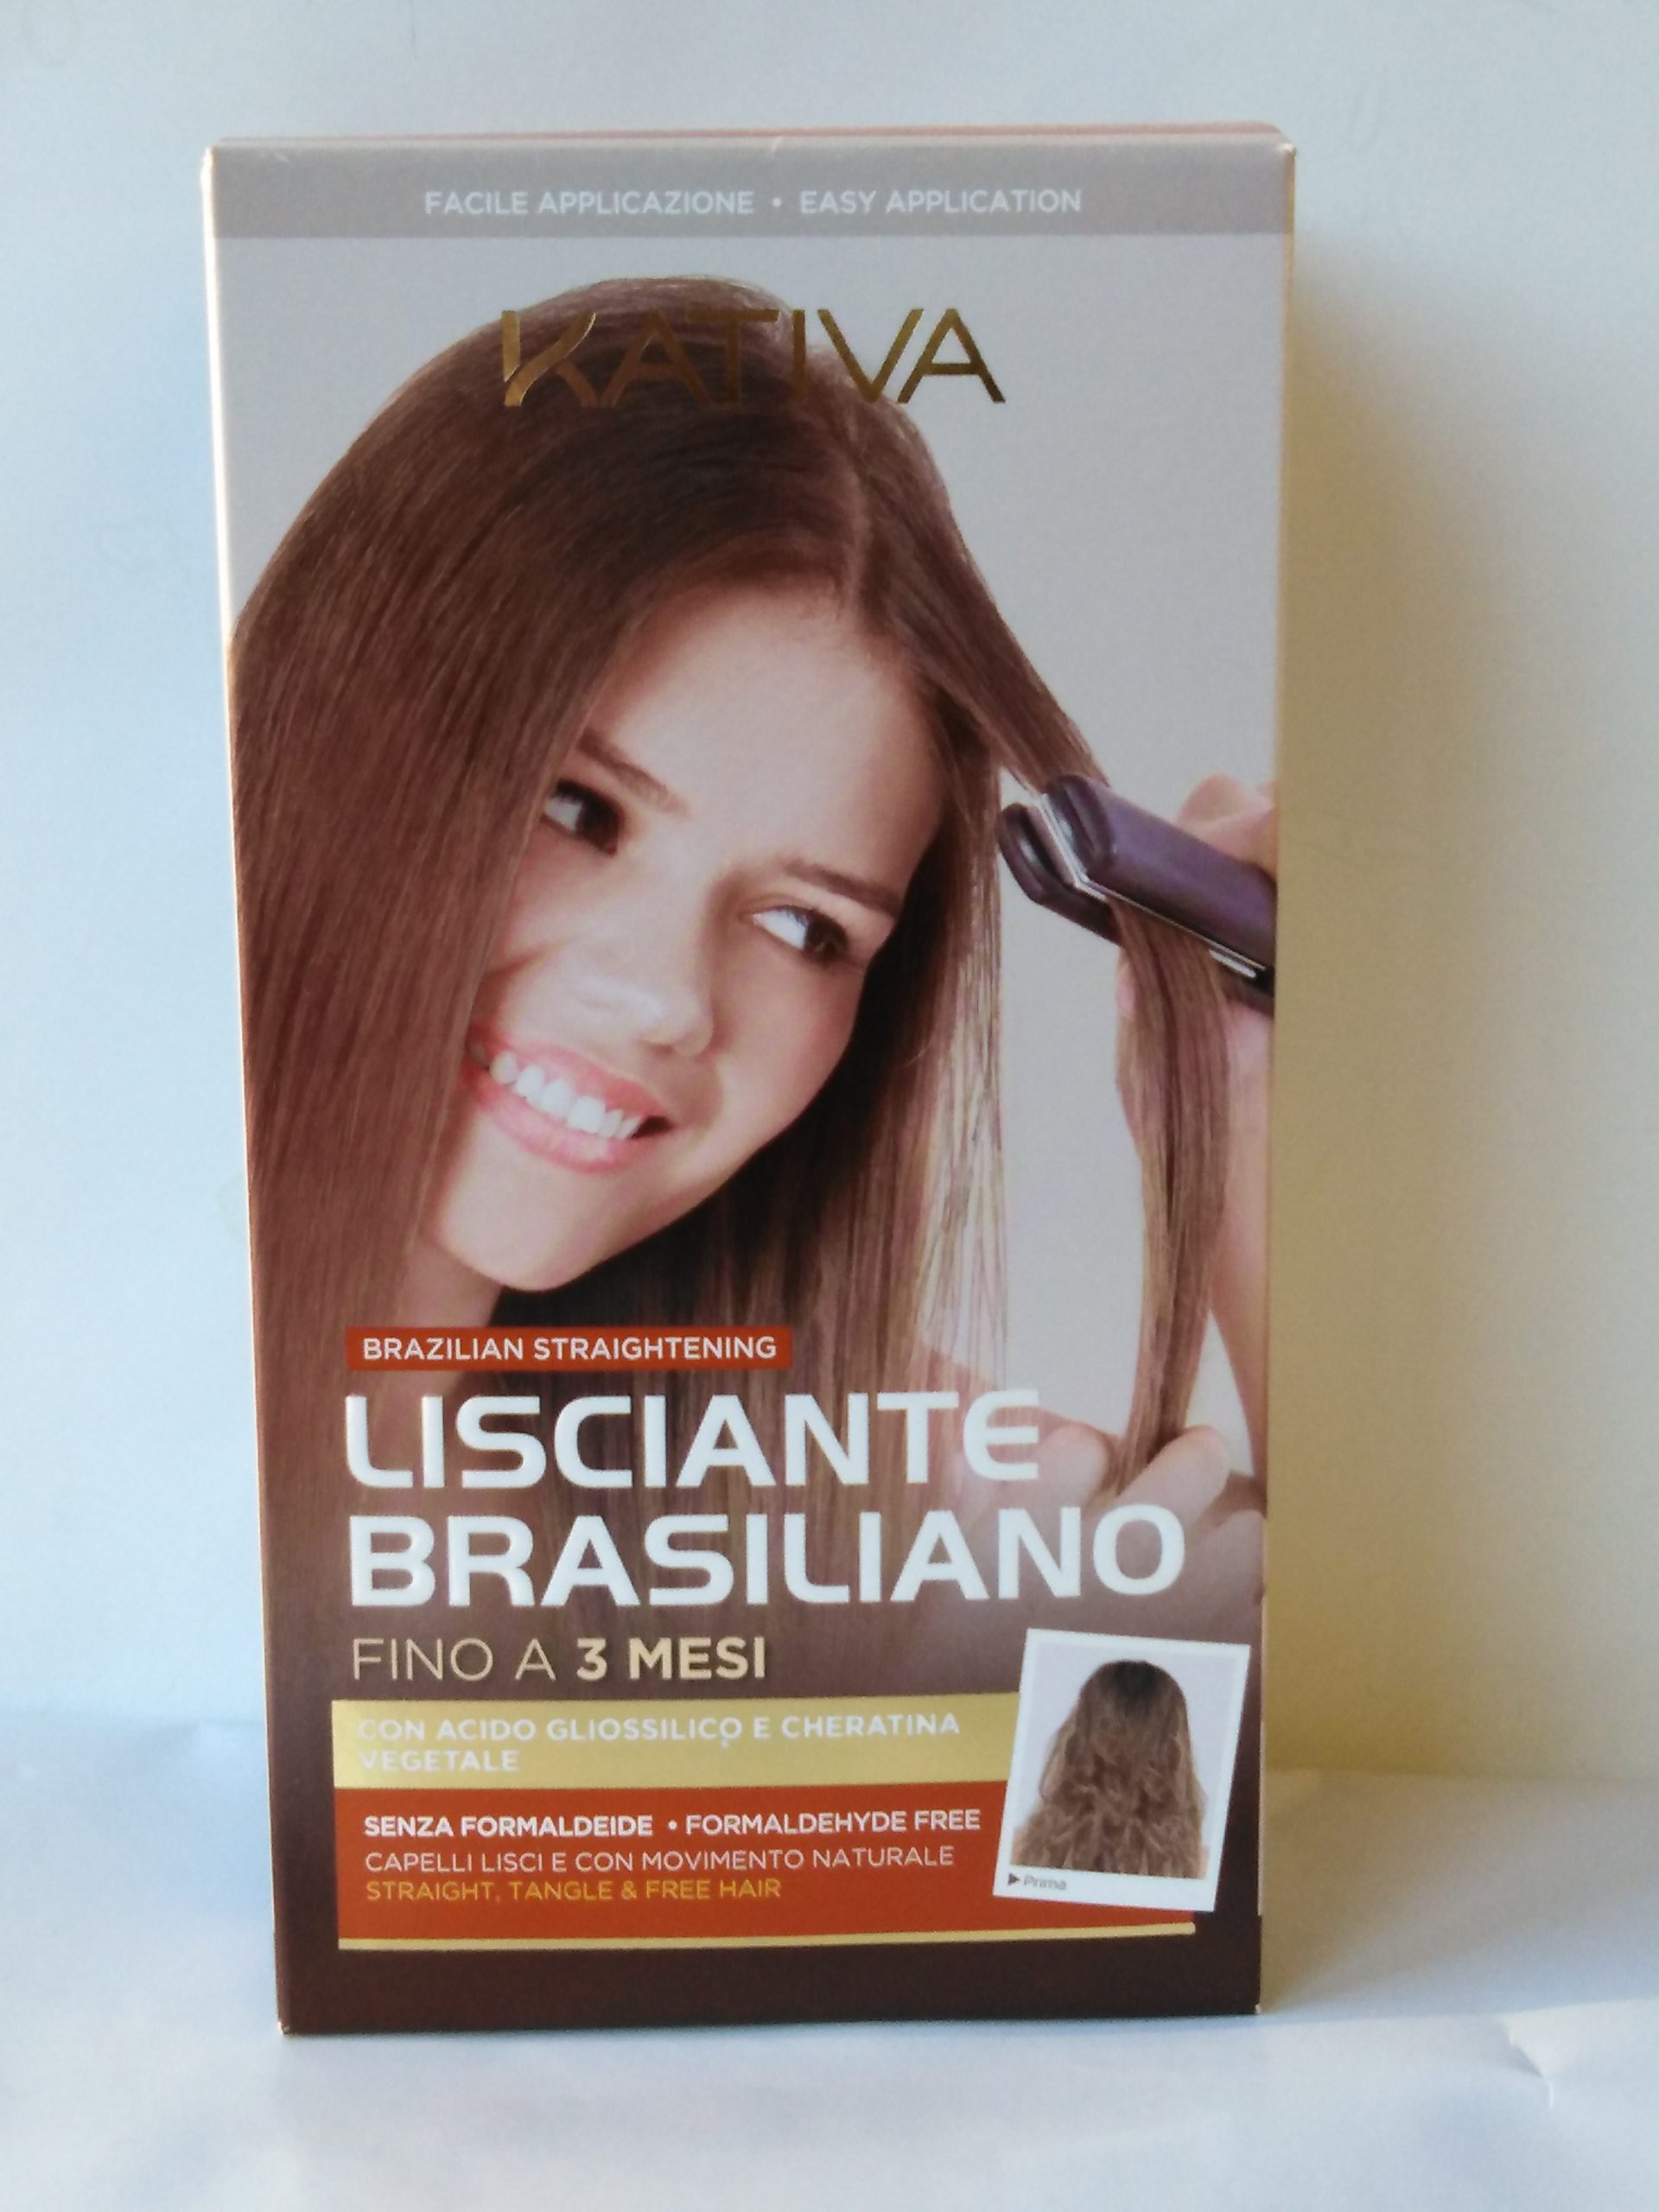 Kativa Trattamento Lisciante Brasiliano con cheratina vegetale Trattamento  professionale lisciante per capelli SENZA FORMALDEIDE Con acido gliossilico  e cheratina vegetale